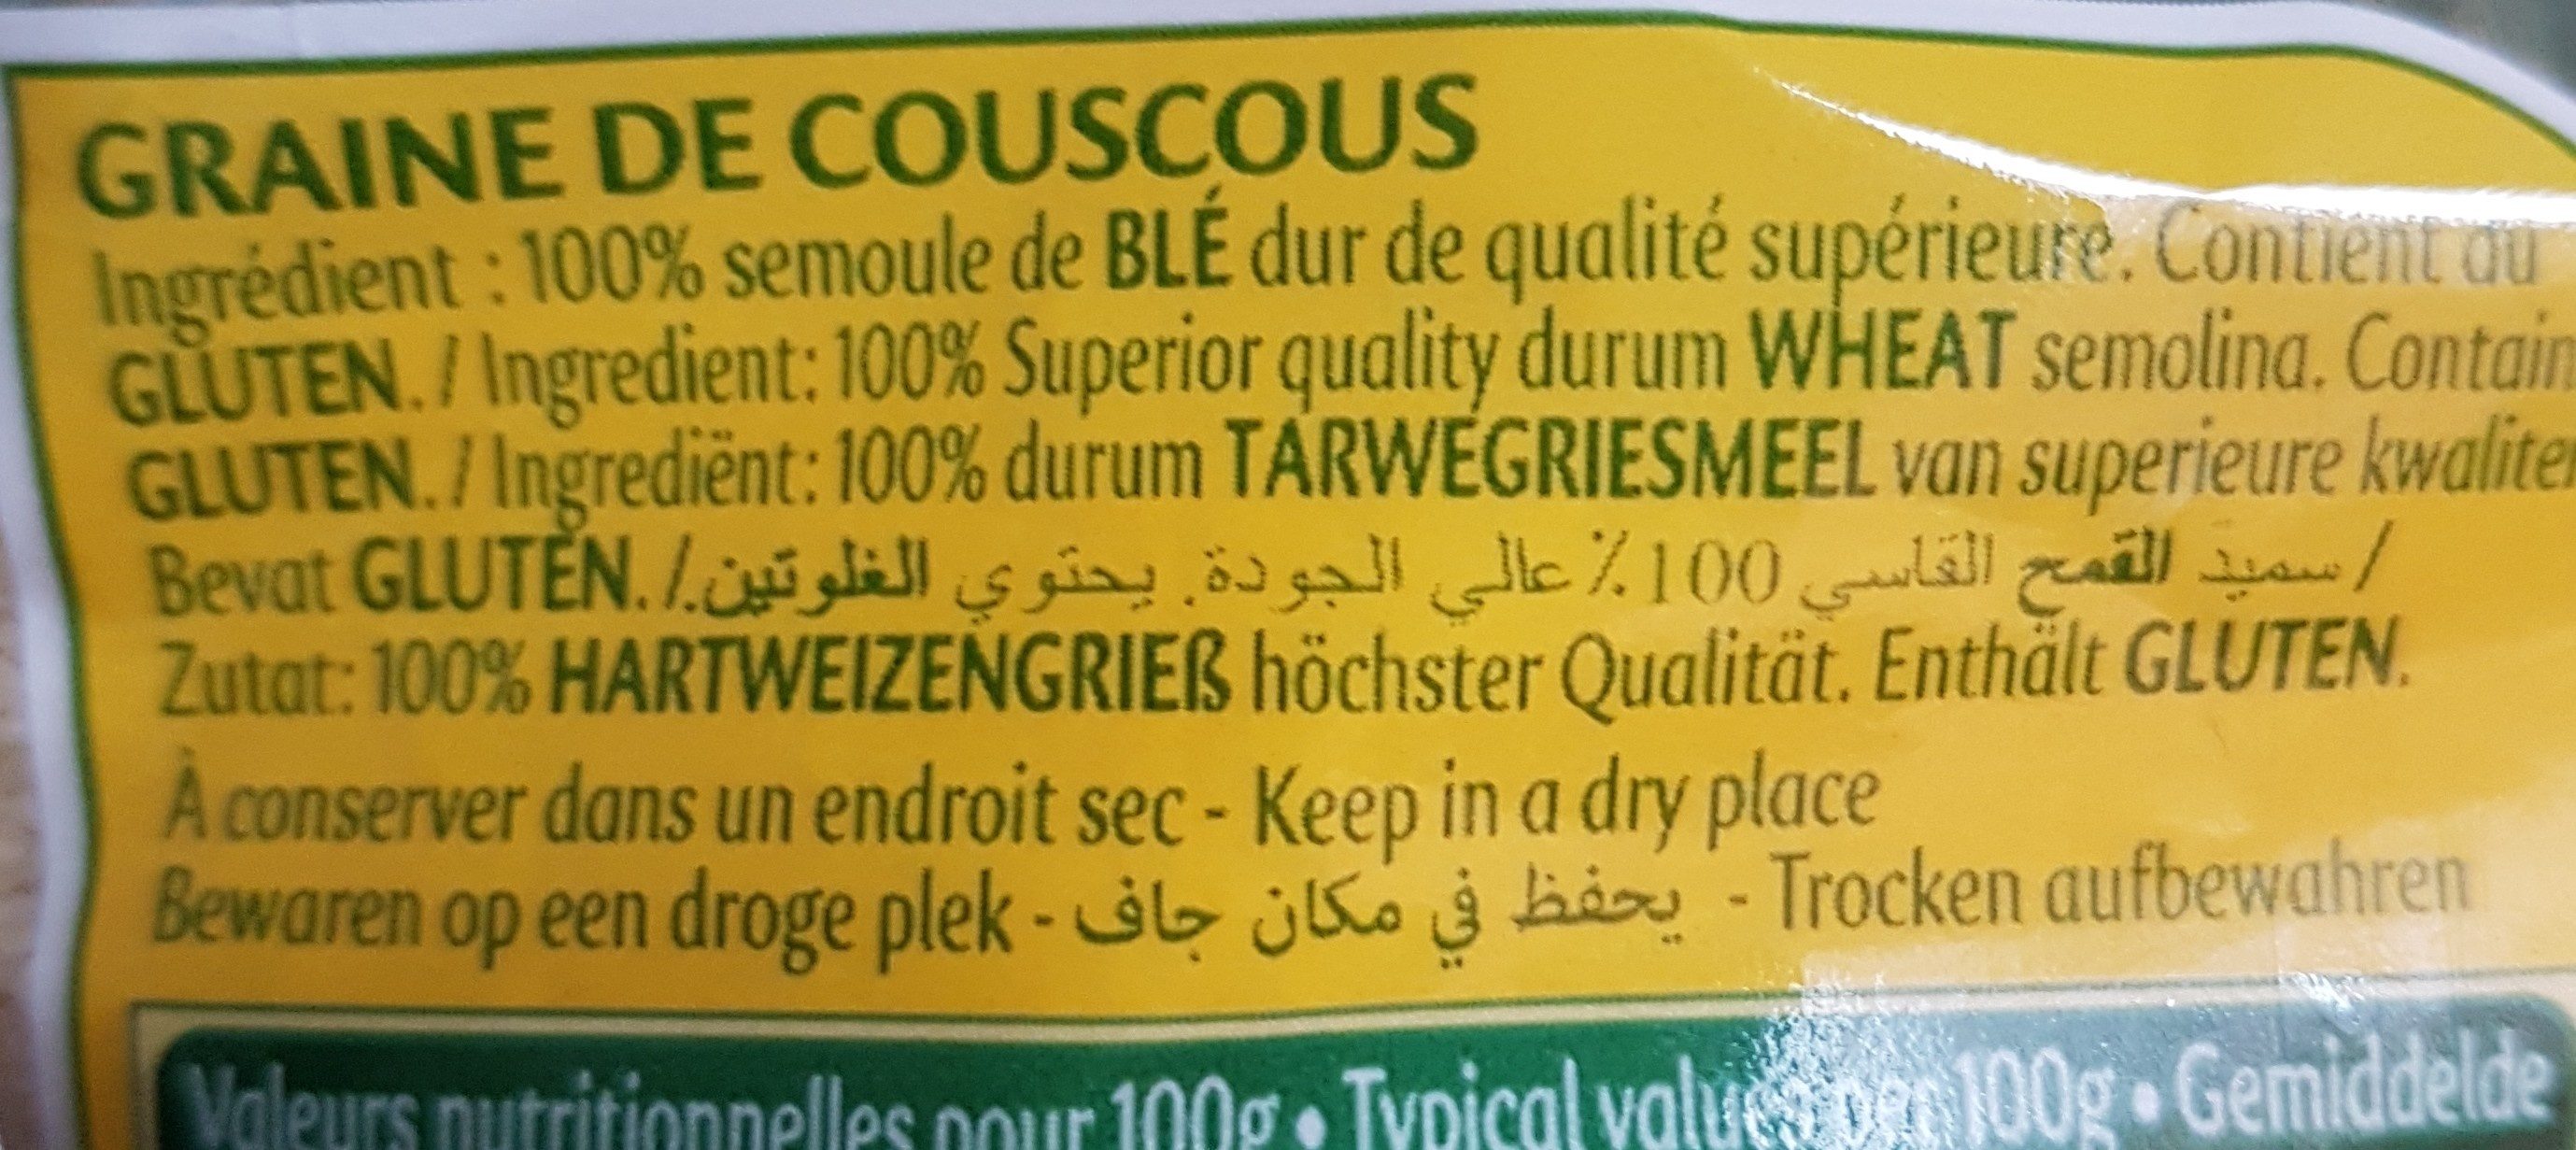 Zakia couscous fin qualite superieur 1kg - Ingredients - fr